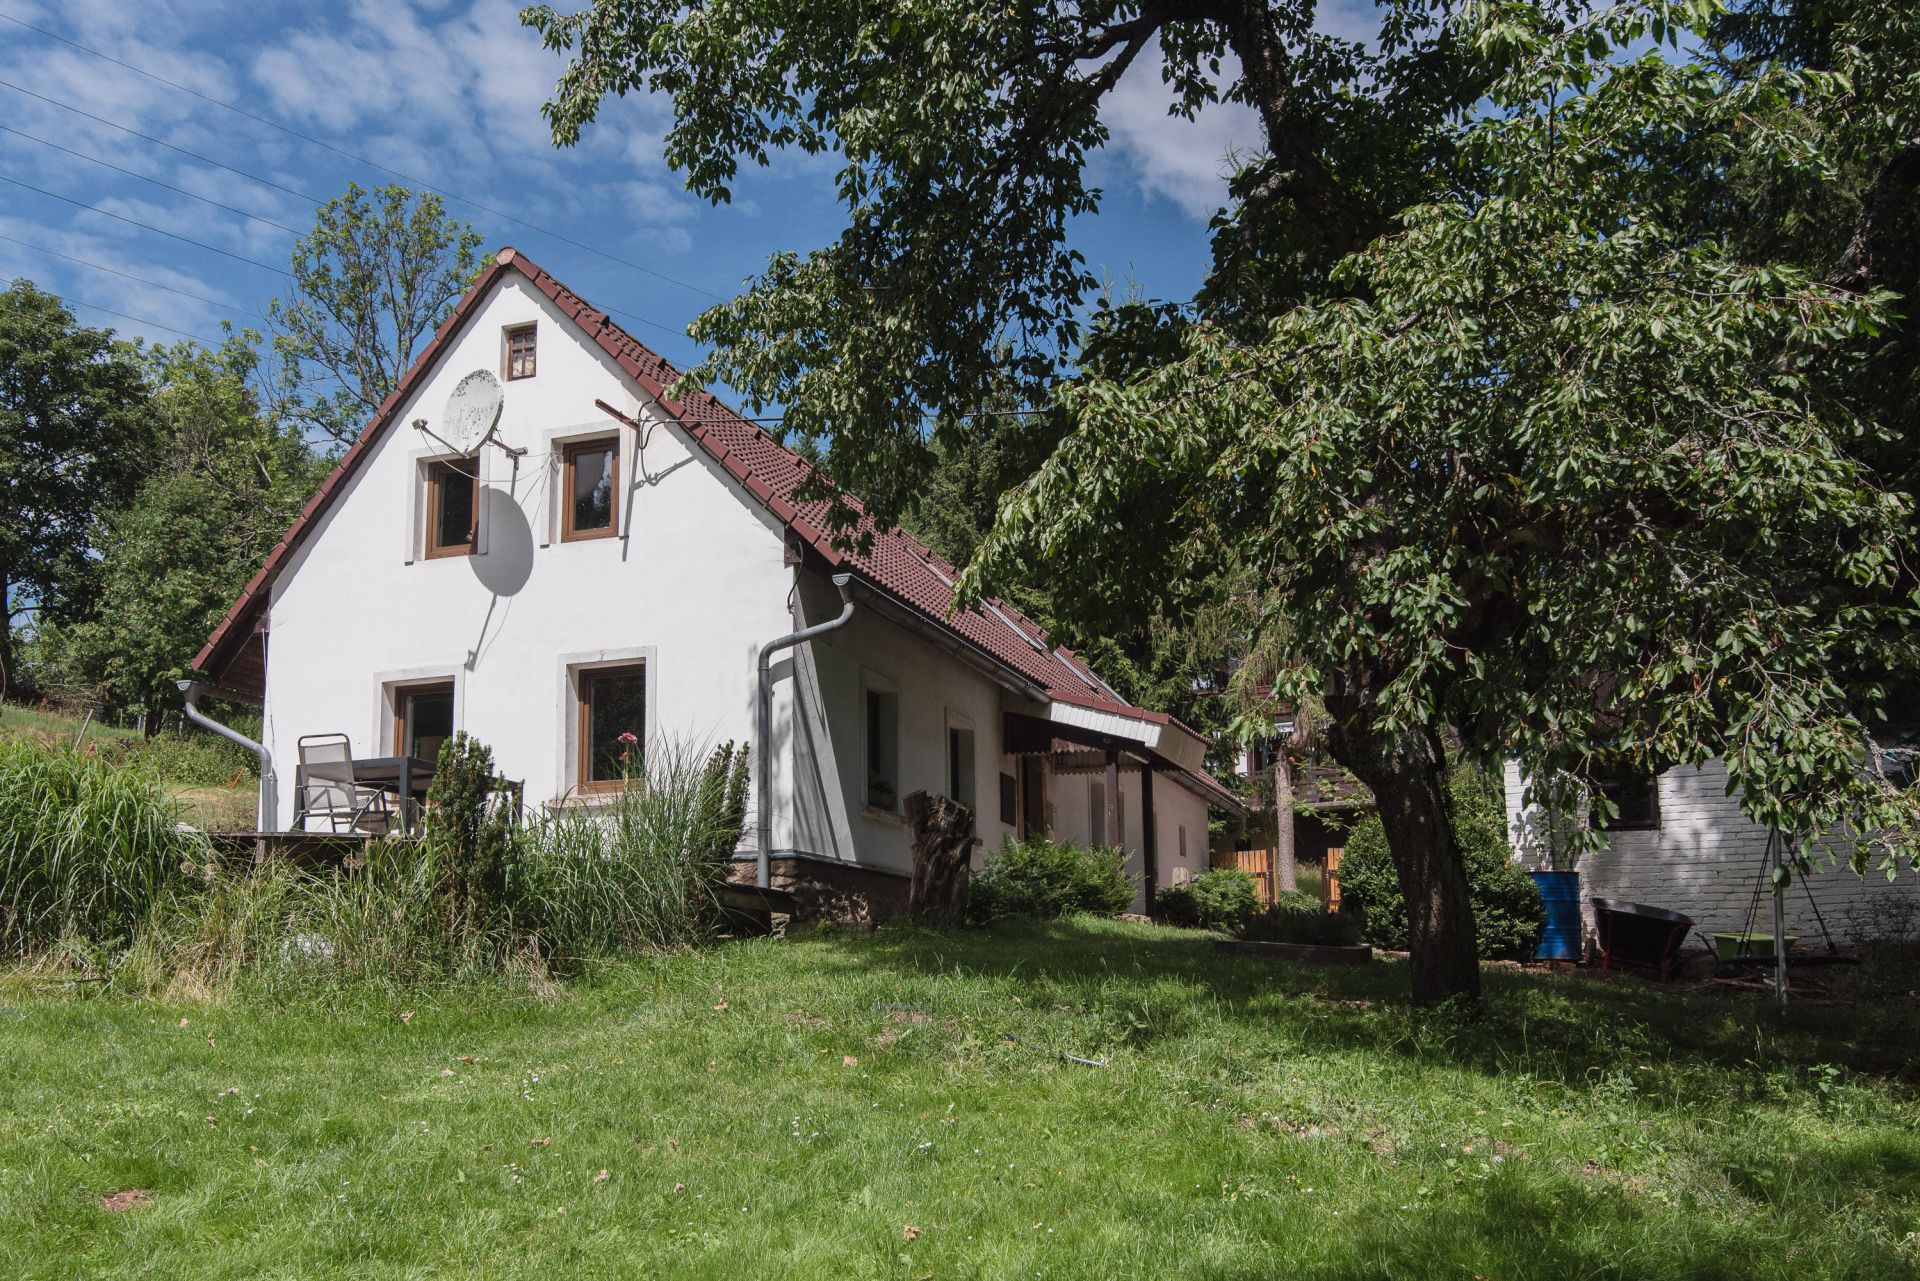 Prodej chalupy s pozemkem 3689 m2 v Javorníku v Krkonoších